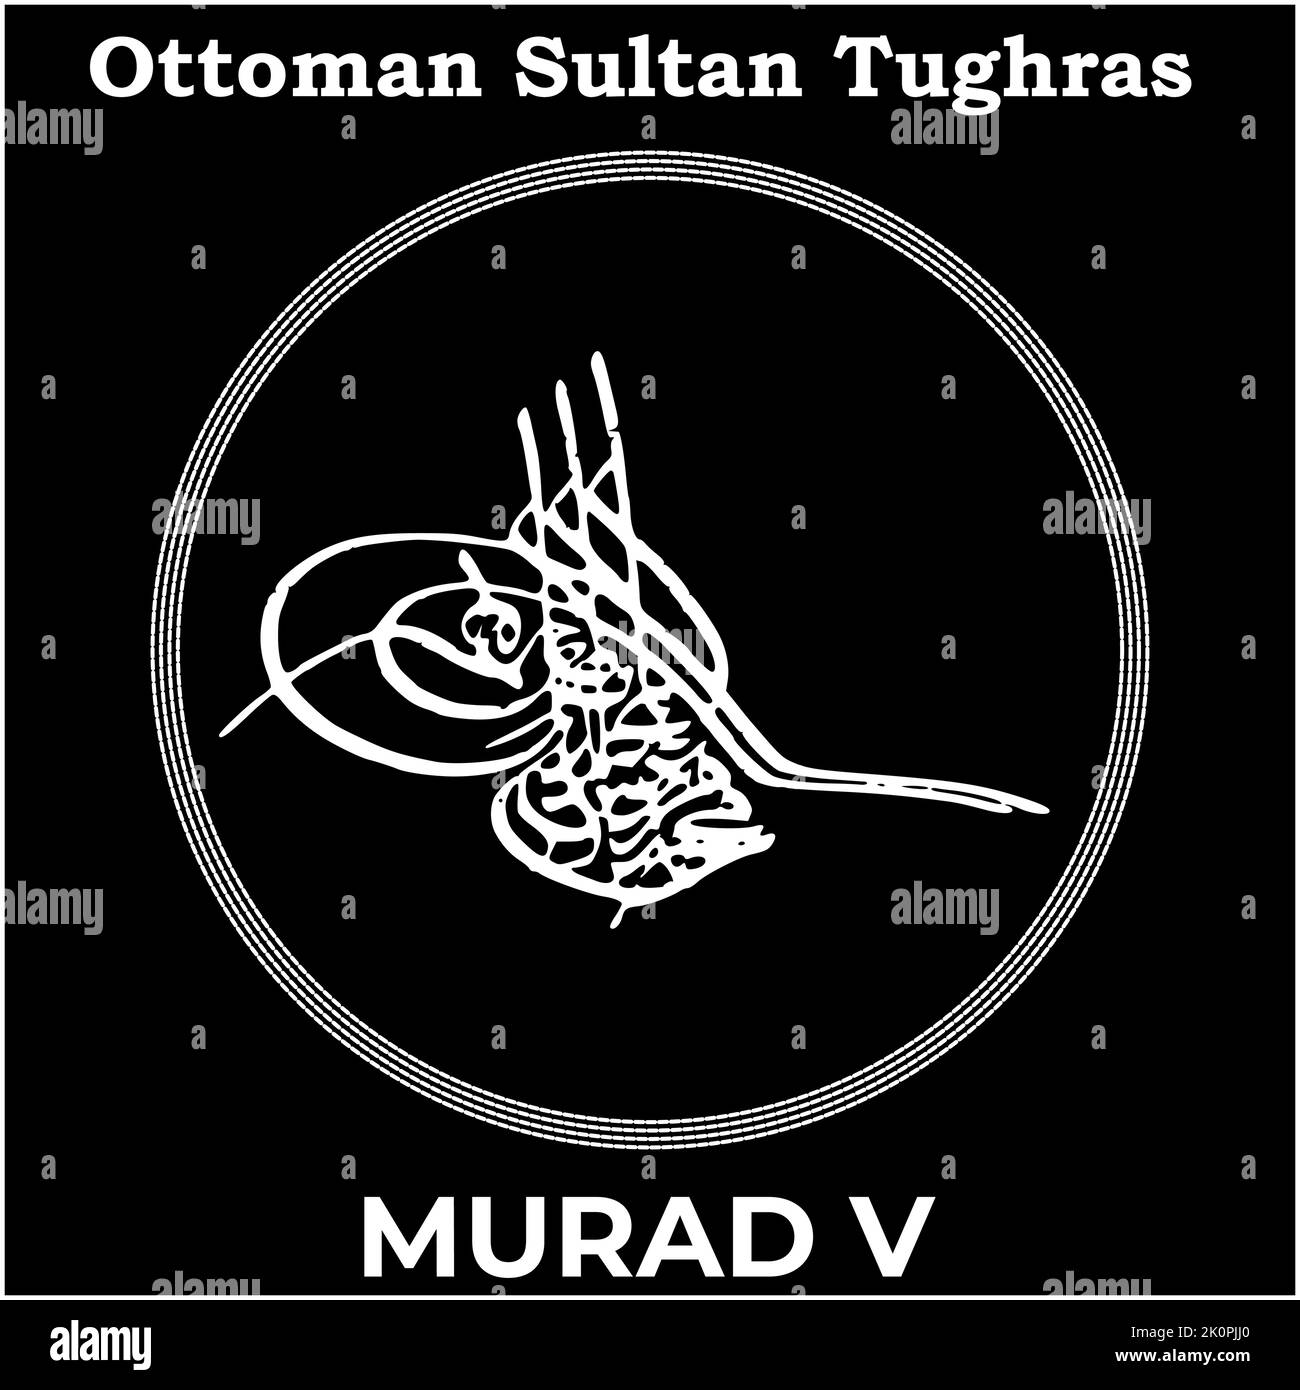 Immagine vettoriale con firma Tughra del trentatreesimo sultano Murad V ottomano, Tughra di Murad V con sfondo nero. Illustrazione Vettoriale